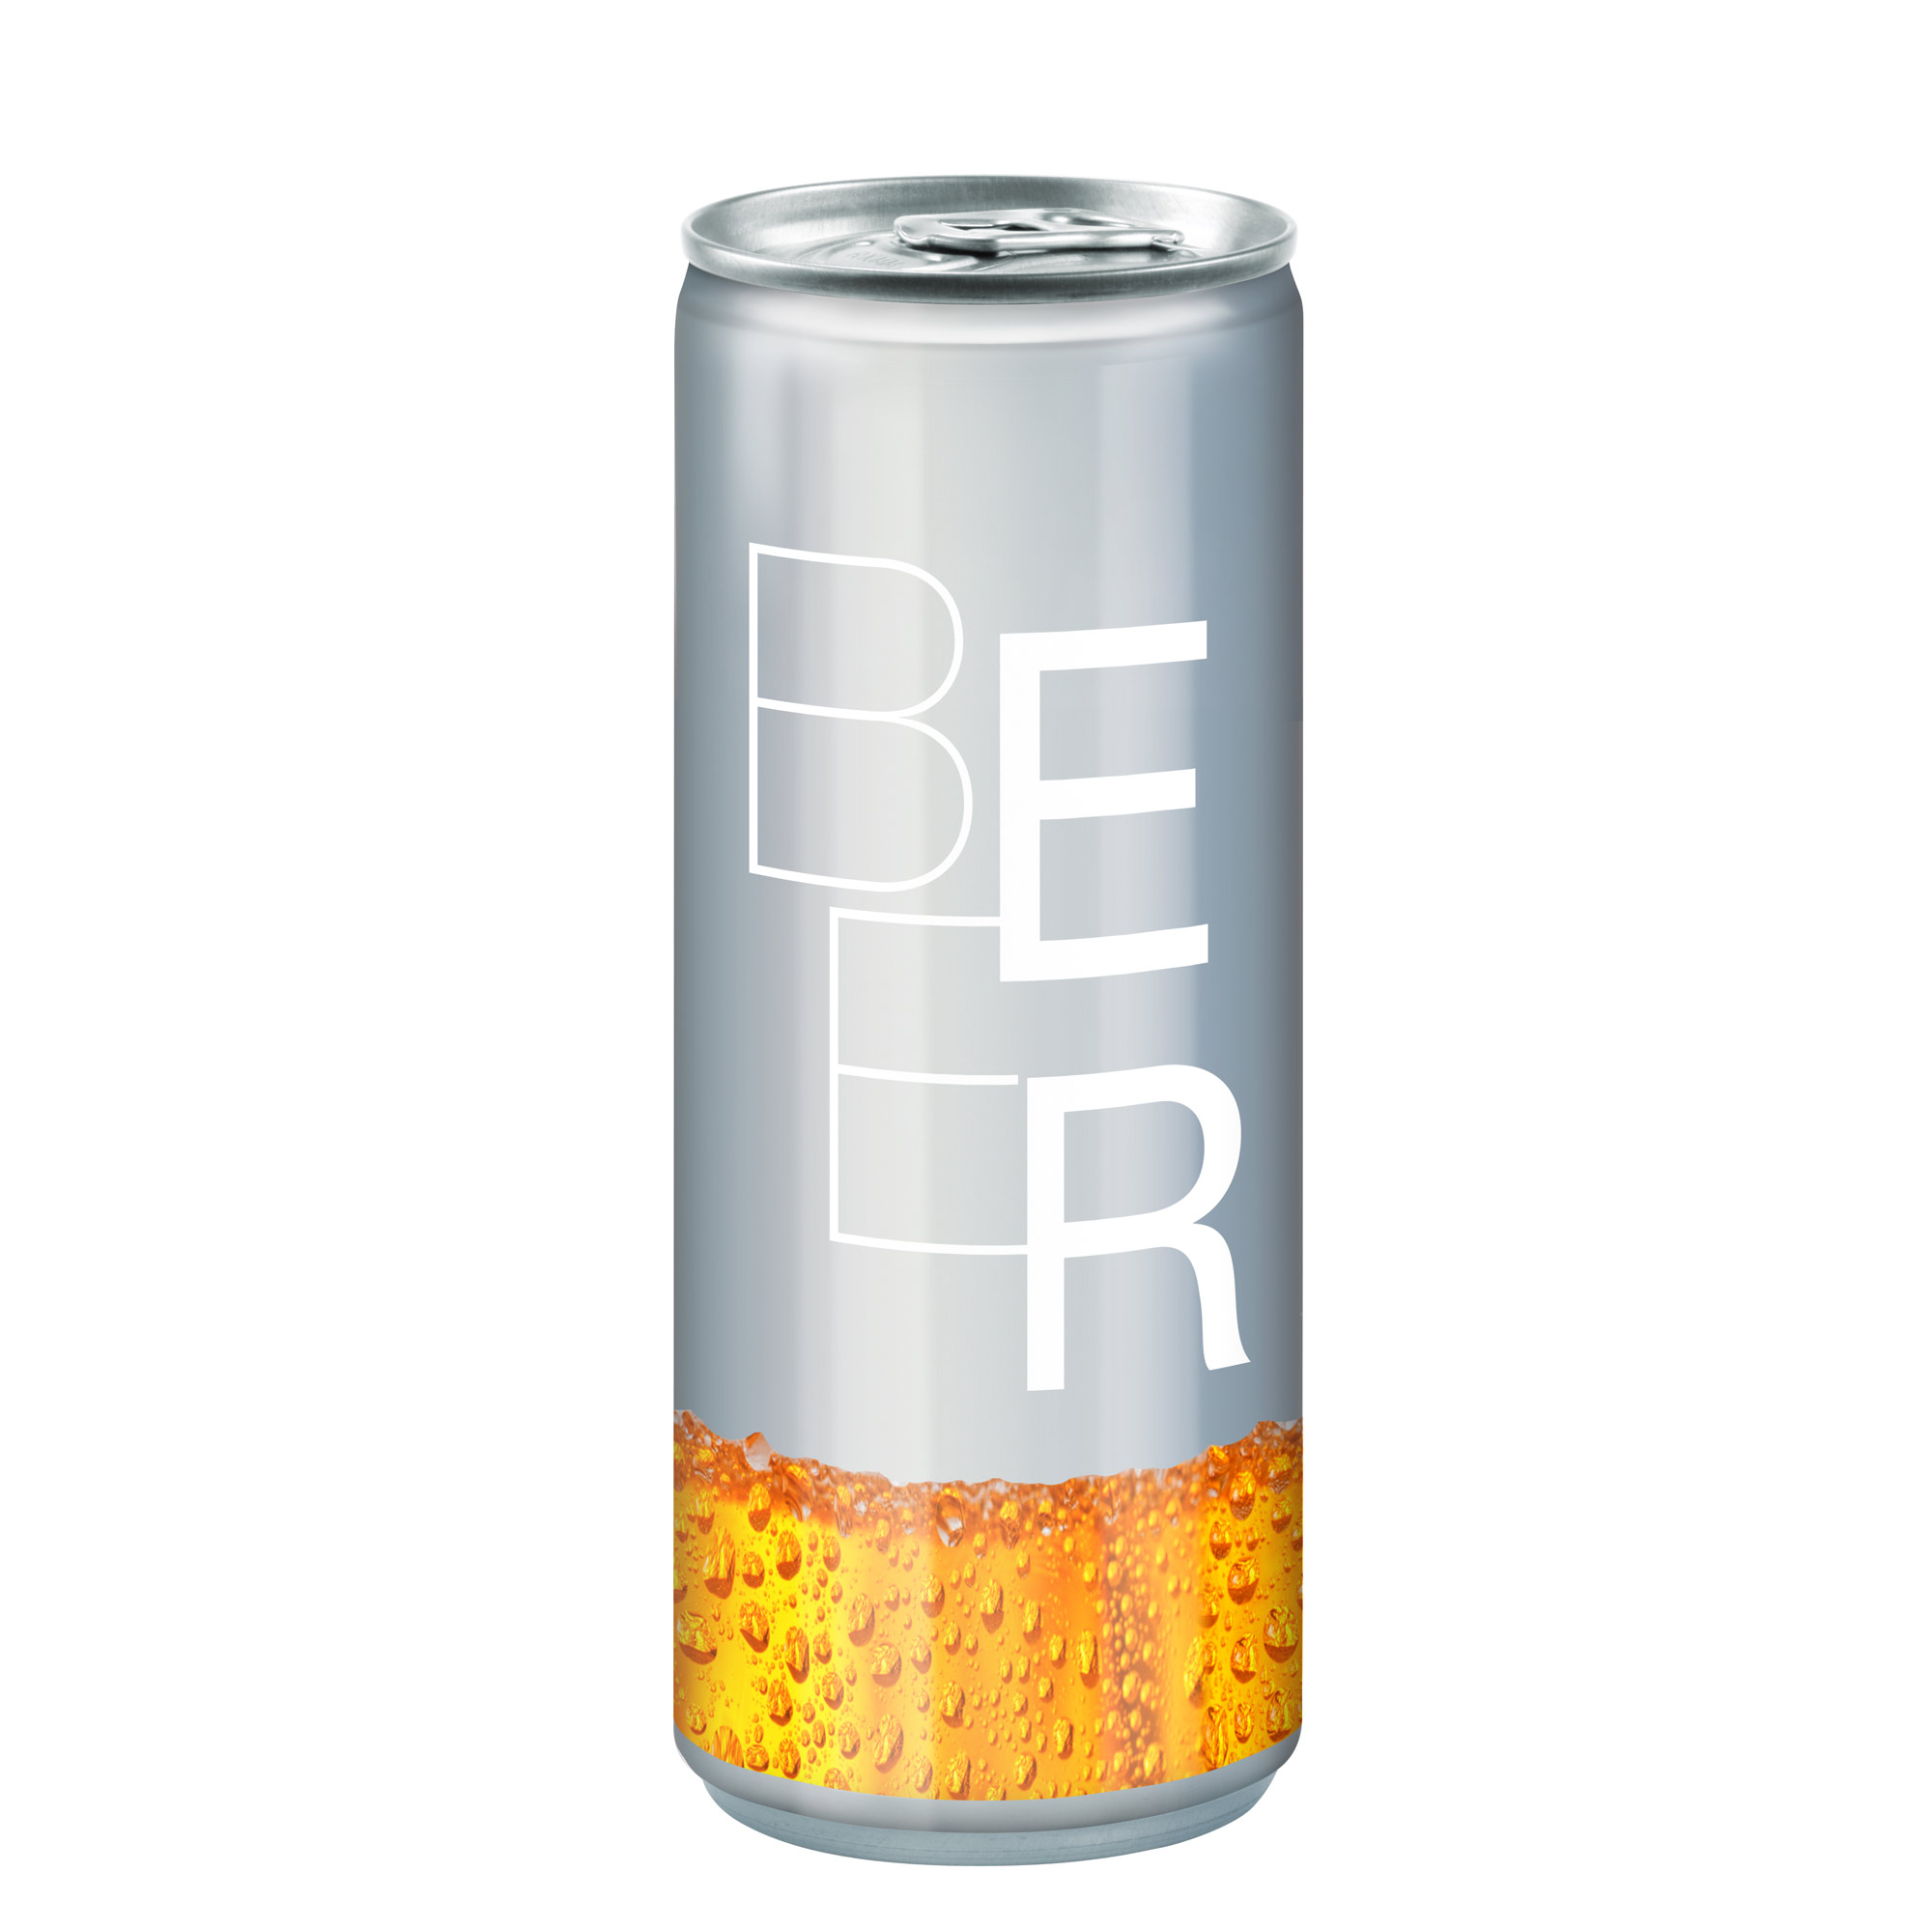 250 ml Bier - No Label Look (DPG)